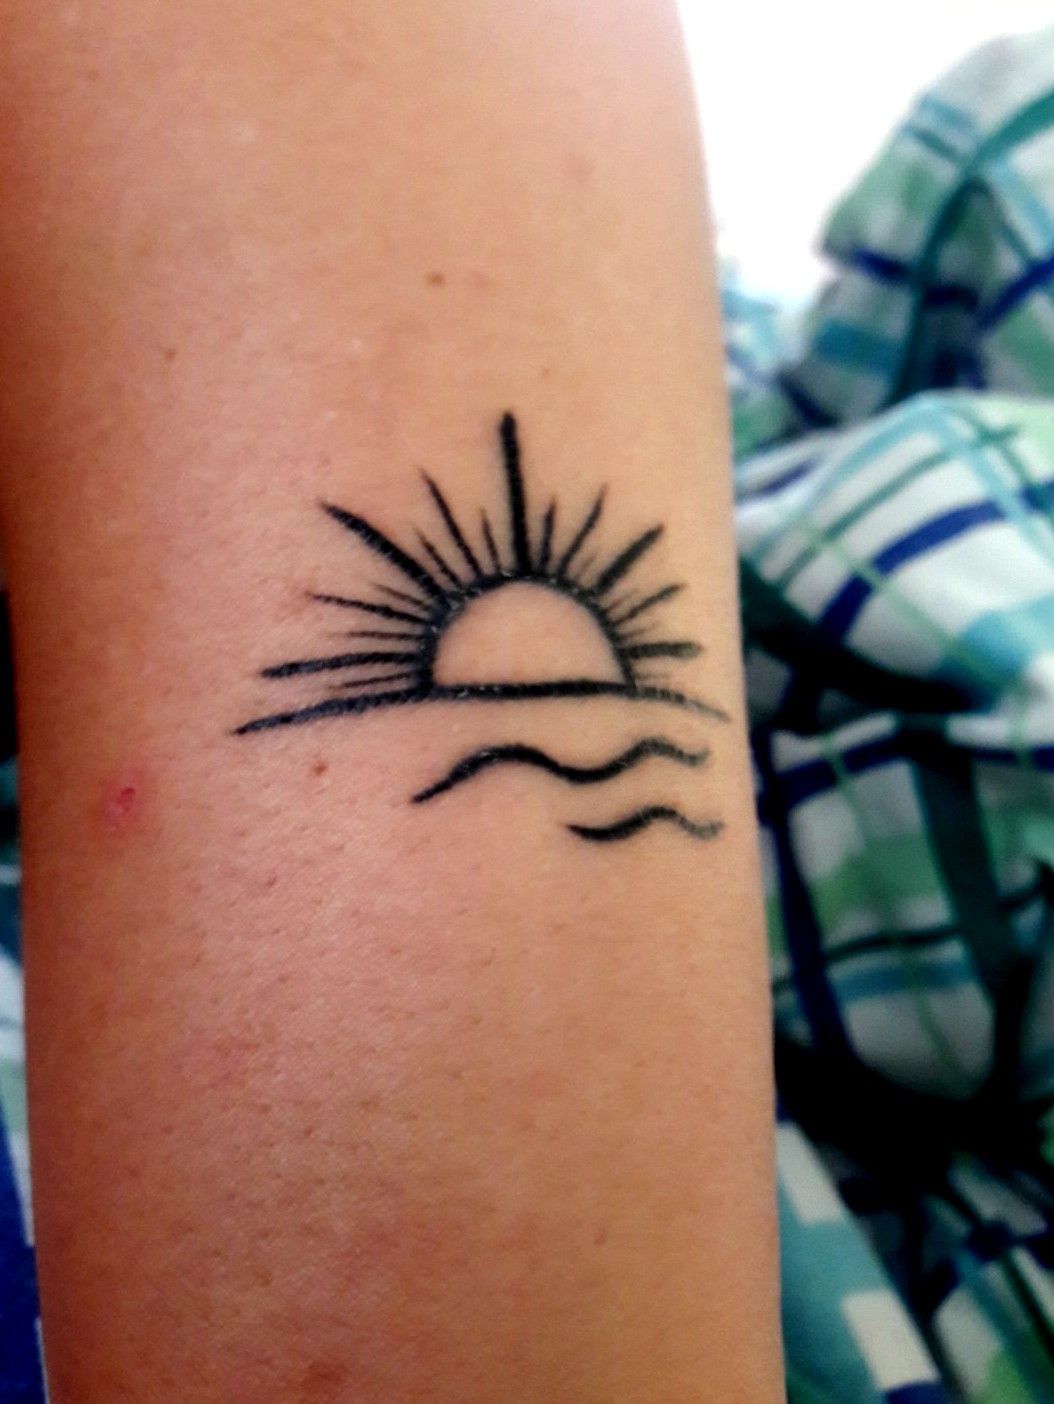 SUN RISE  SUN SET           sunrise sunset tattoo  fingertattoo fineline finelinetattoo smalltattoo littletattoo  Wicky  Nicky wickynicky on Instagram